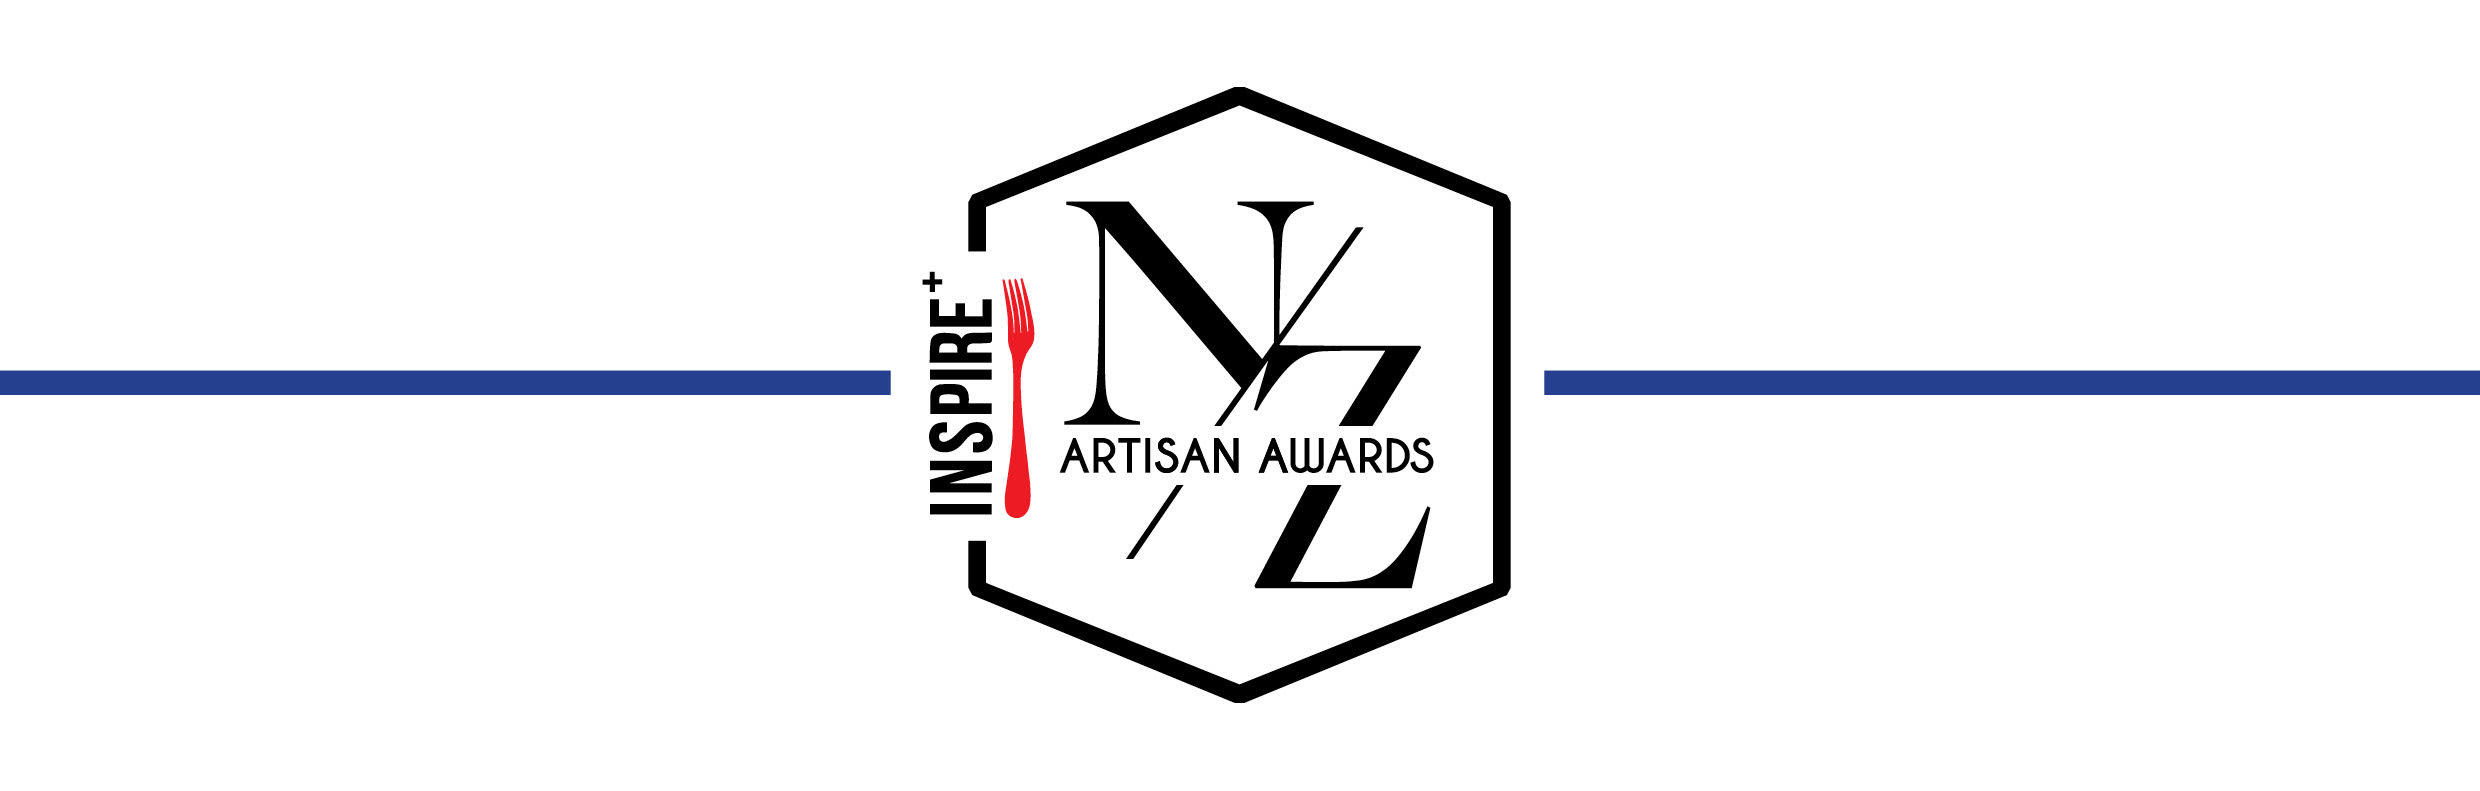 artisan awards logo